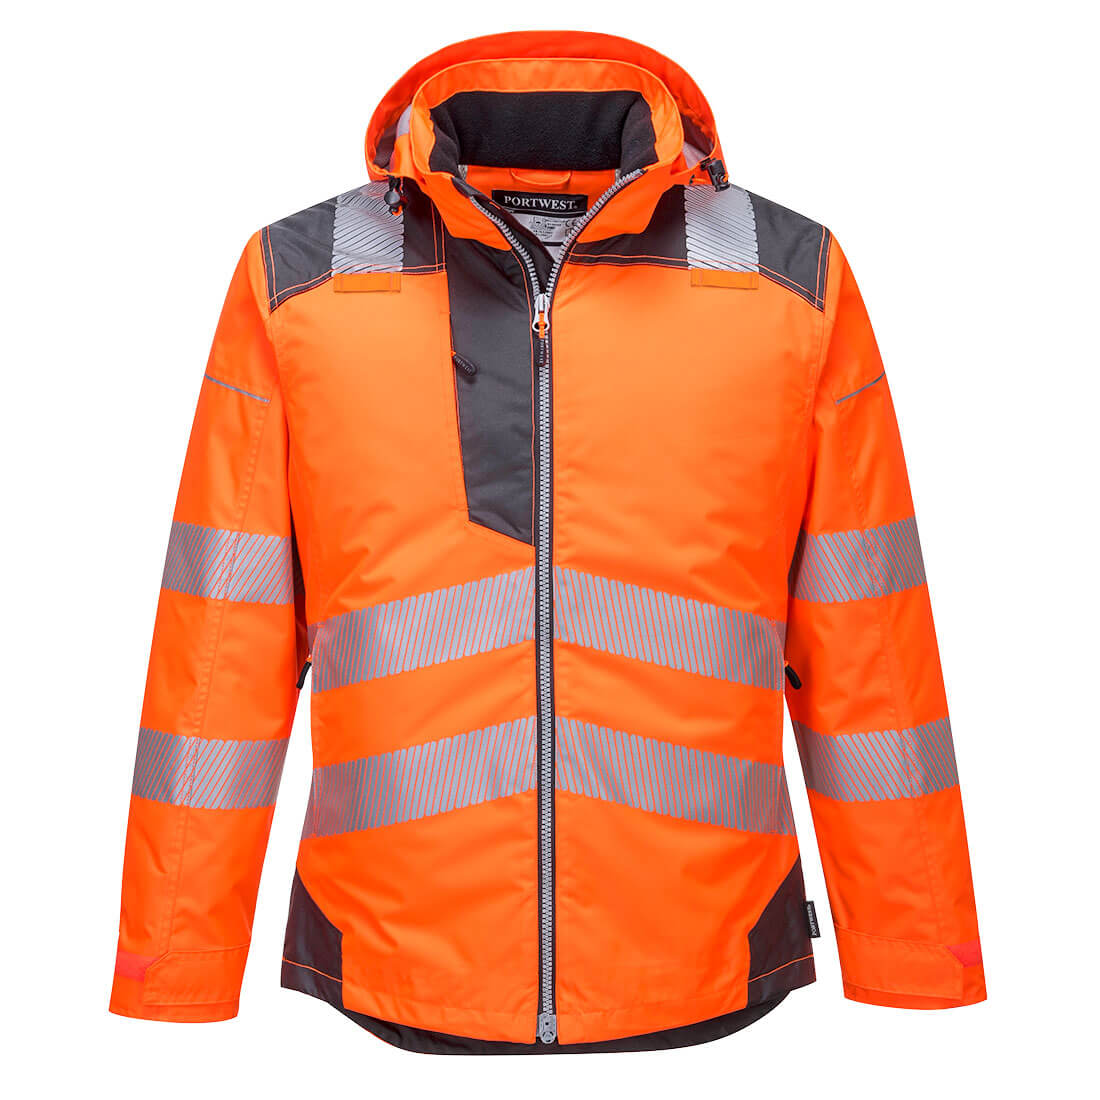 Portwest T400 PW3 Hi Vis Winter Jacket 1#colour_orange-grey